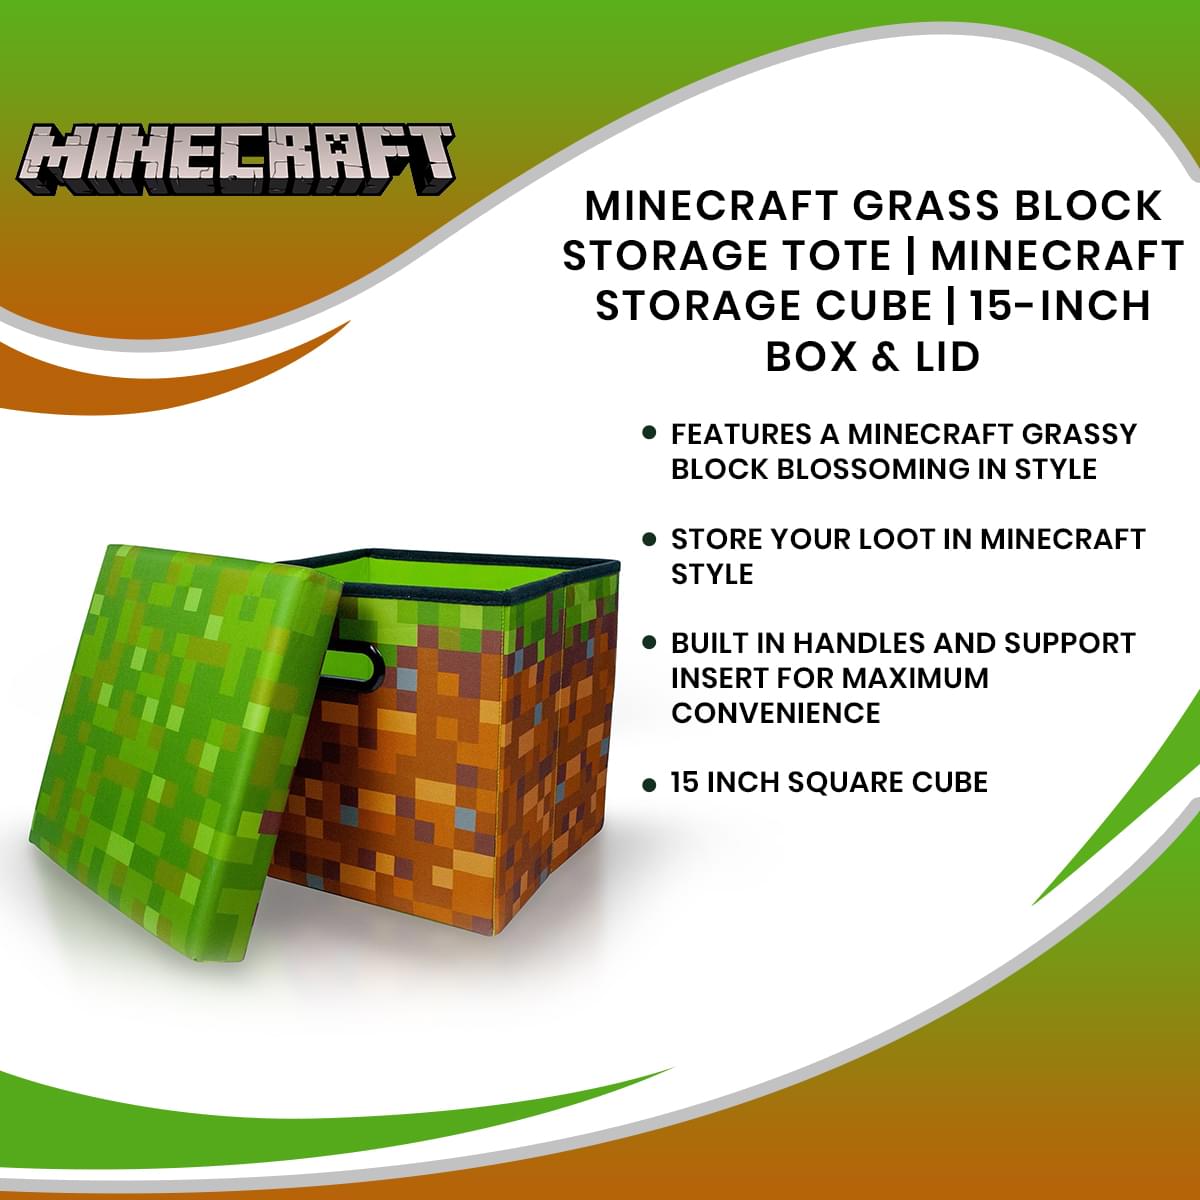 Minecraft Grass Block Storage Tote | Minecraft Storage Cube | 15-Inch Box & Lid - image 7 of 7